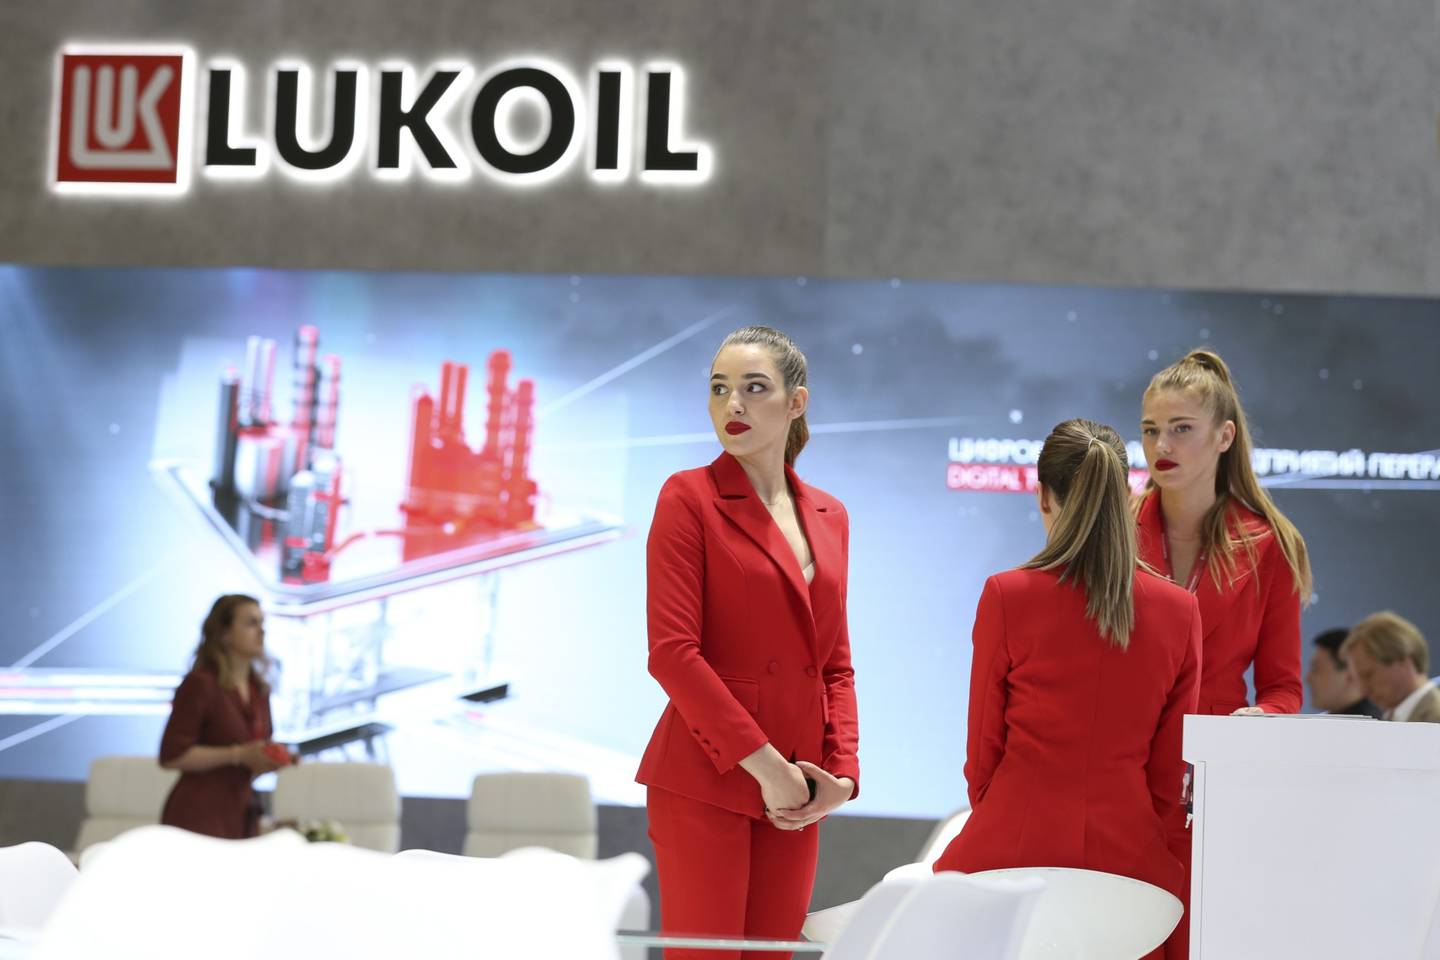 Empleadas esperan en el pabellón de Lukoil para el foro económico internacional de San Petersburgo.